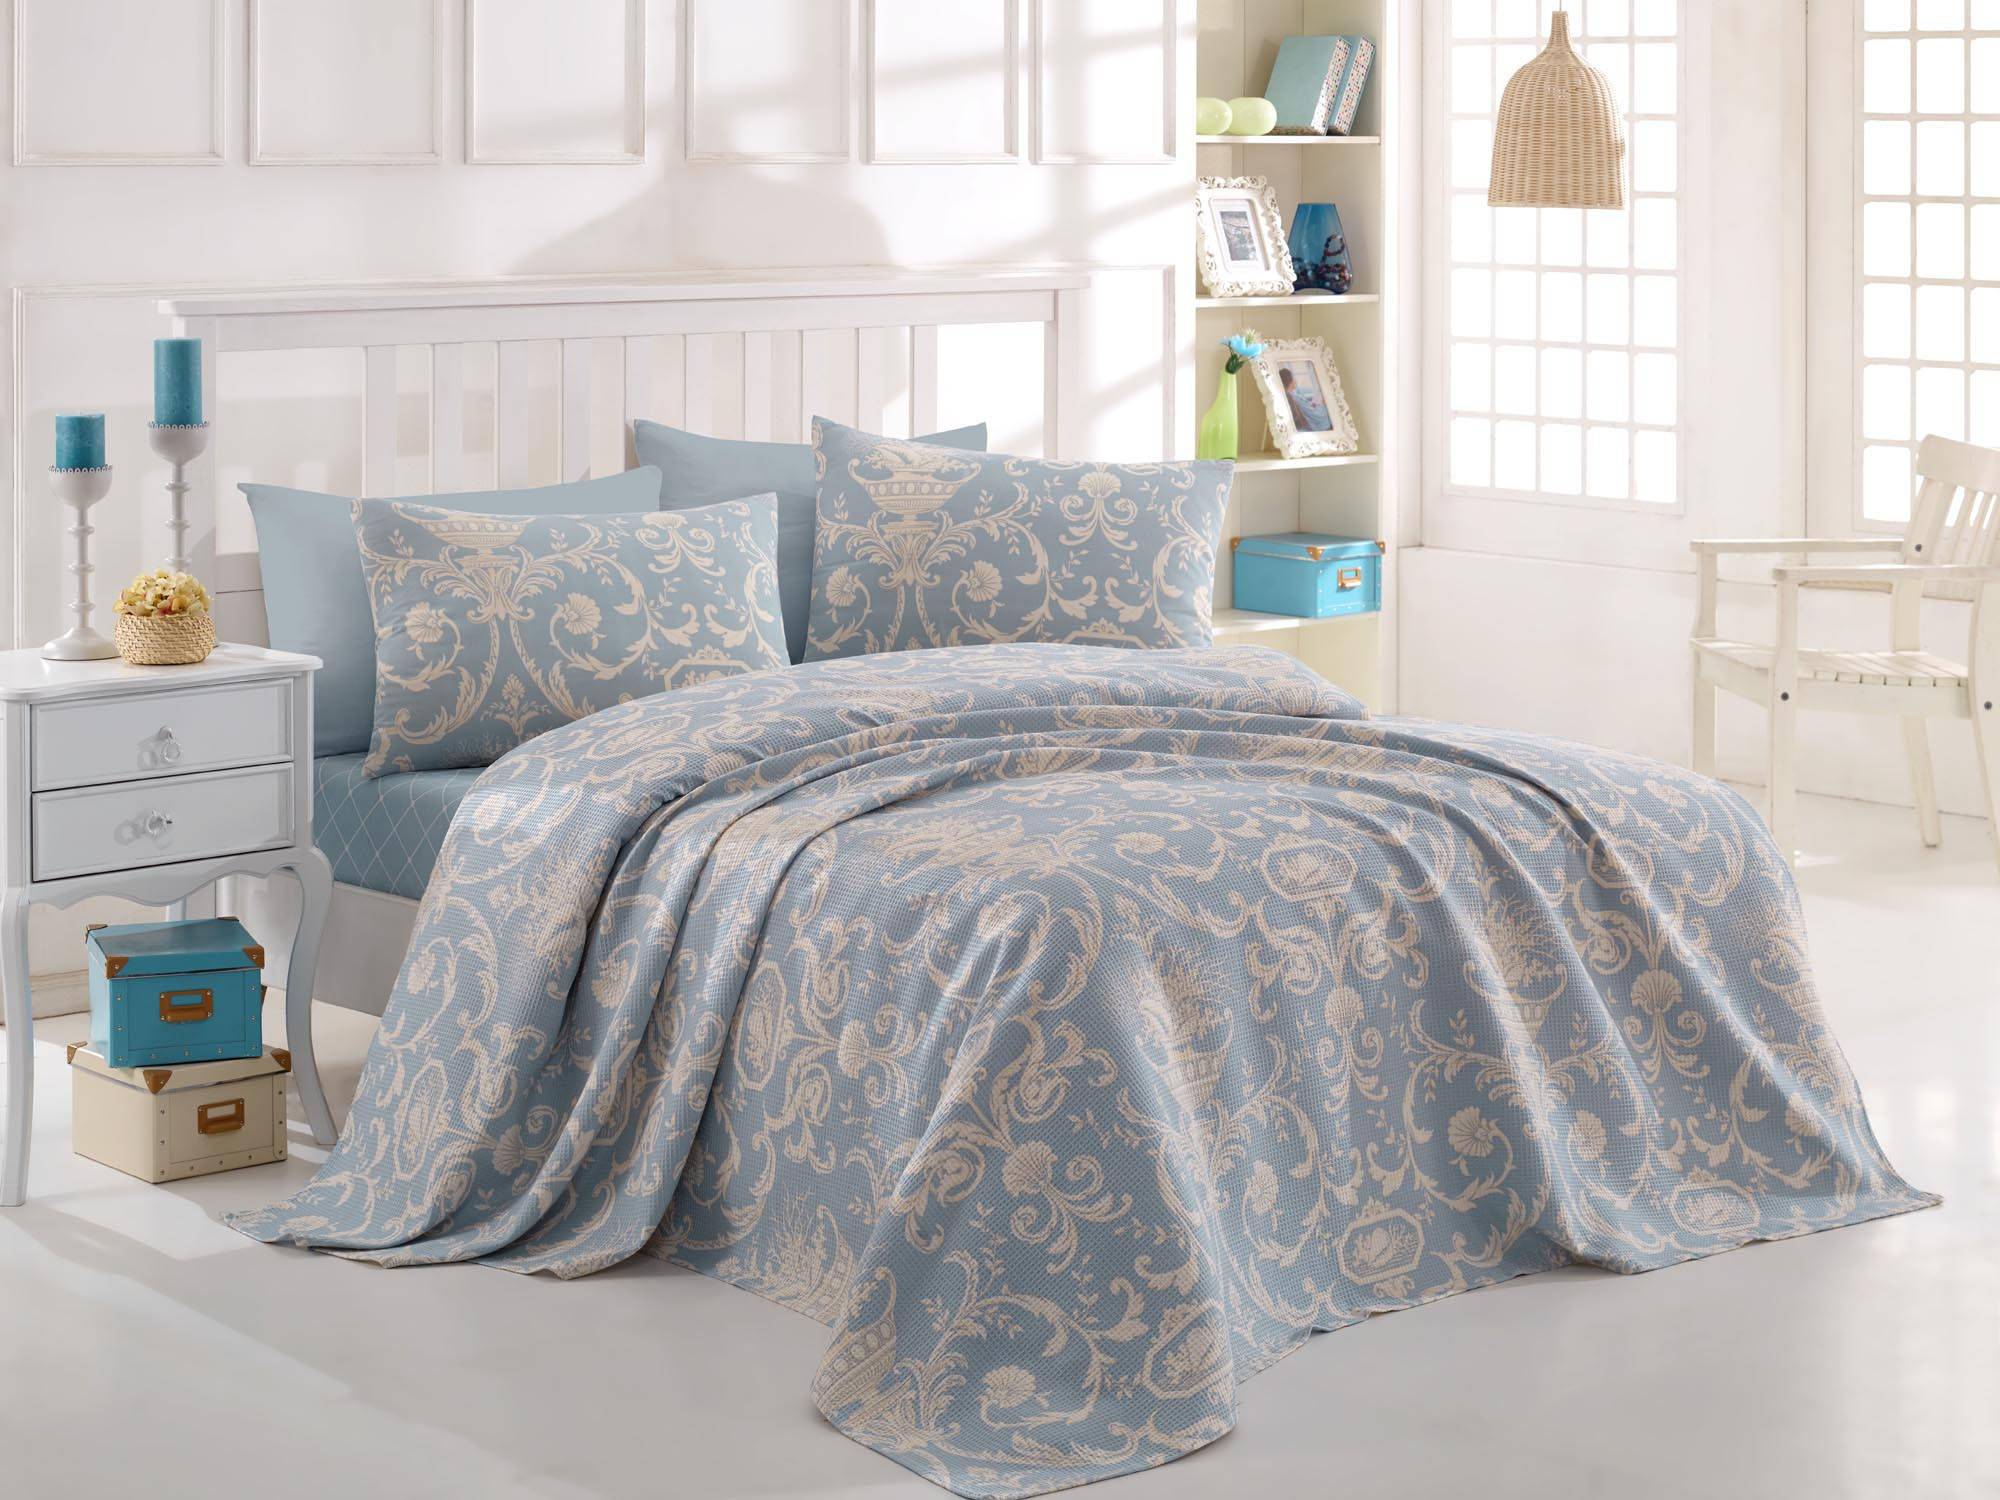 Jeté de lit simple Nadda 160x235cm 100% Coton Motif floral calice Bleu ciel et Blanc